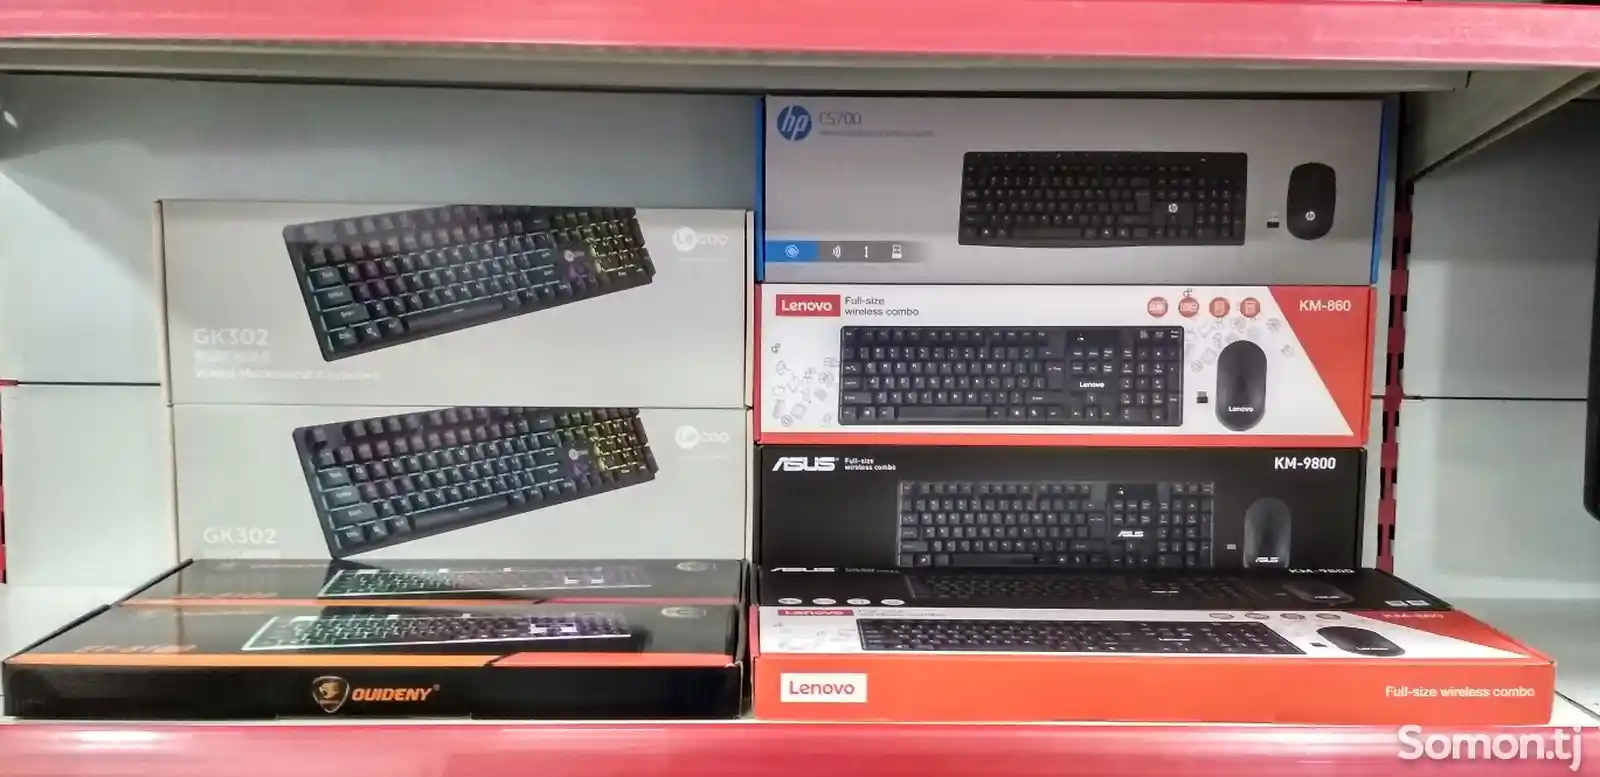 Беспроводная клавиатура и мышка Asus Km-9800-5